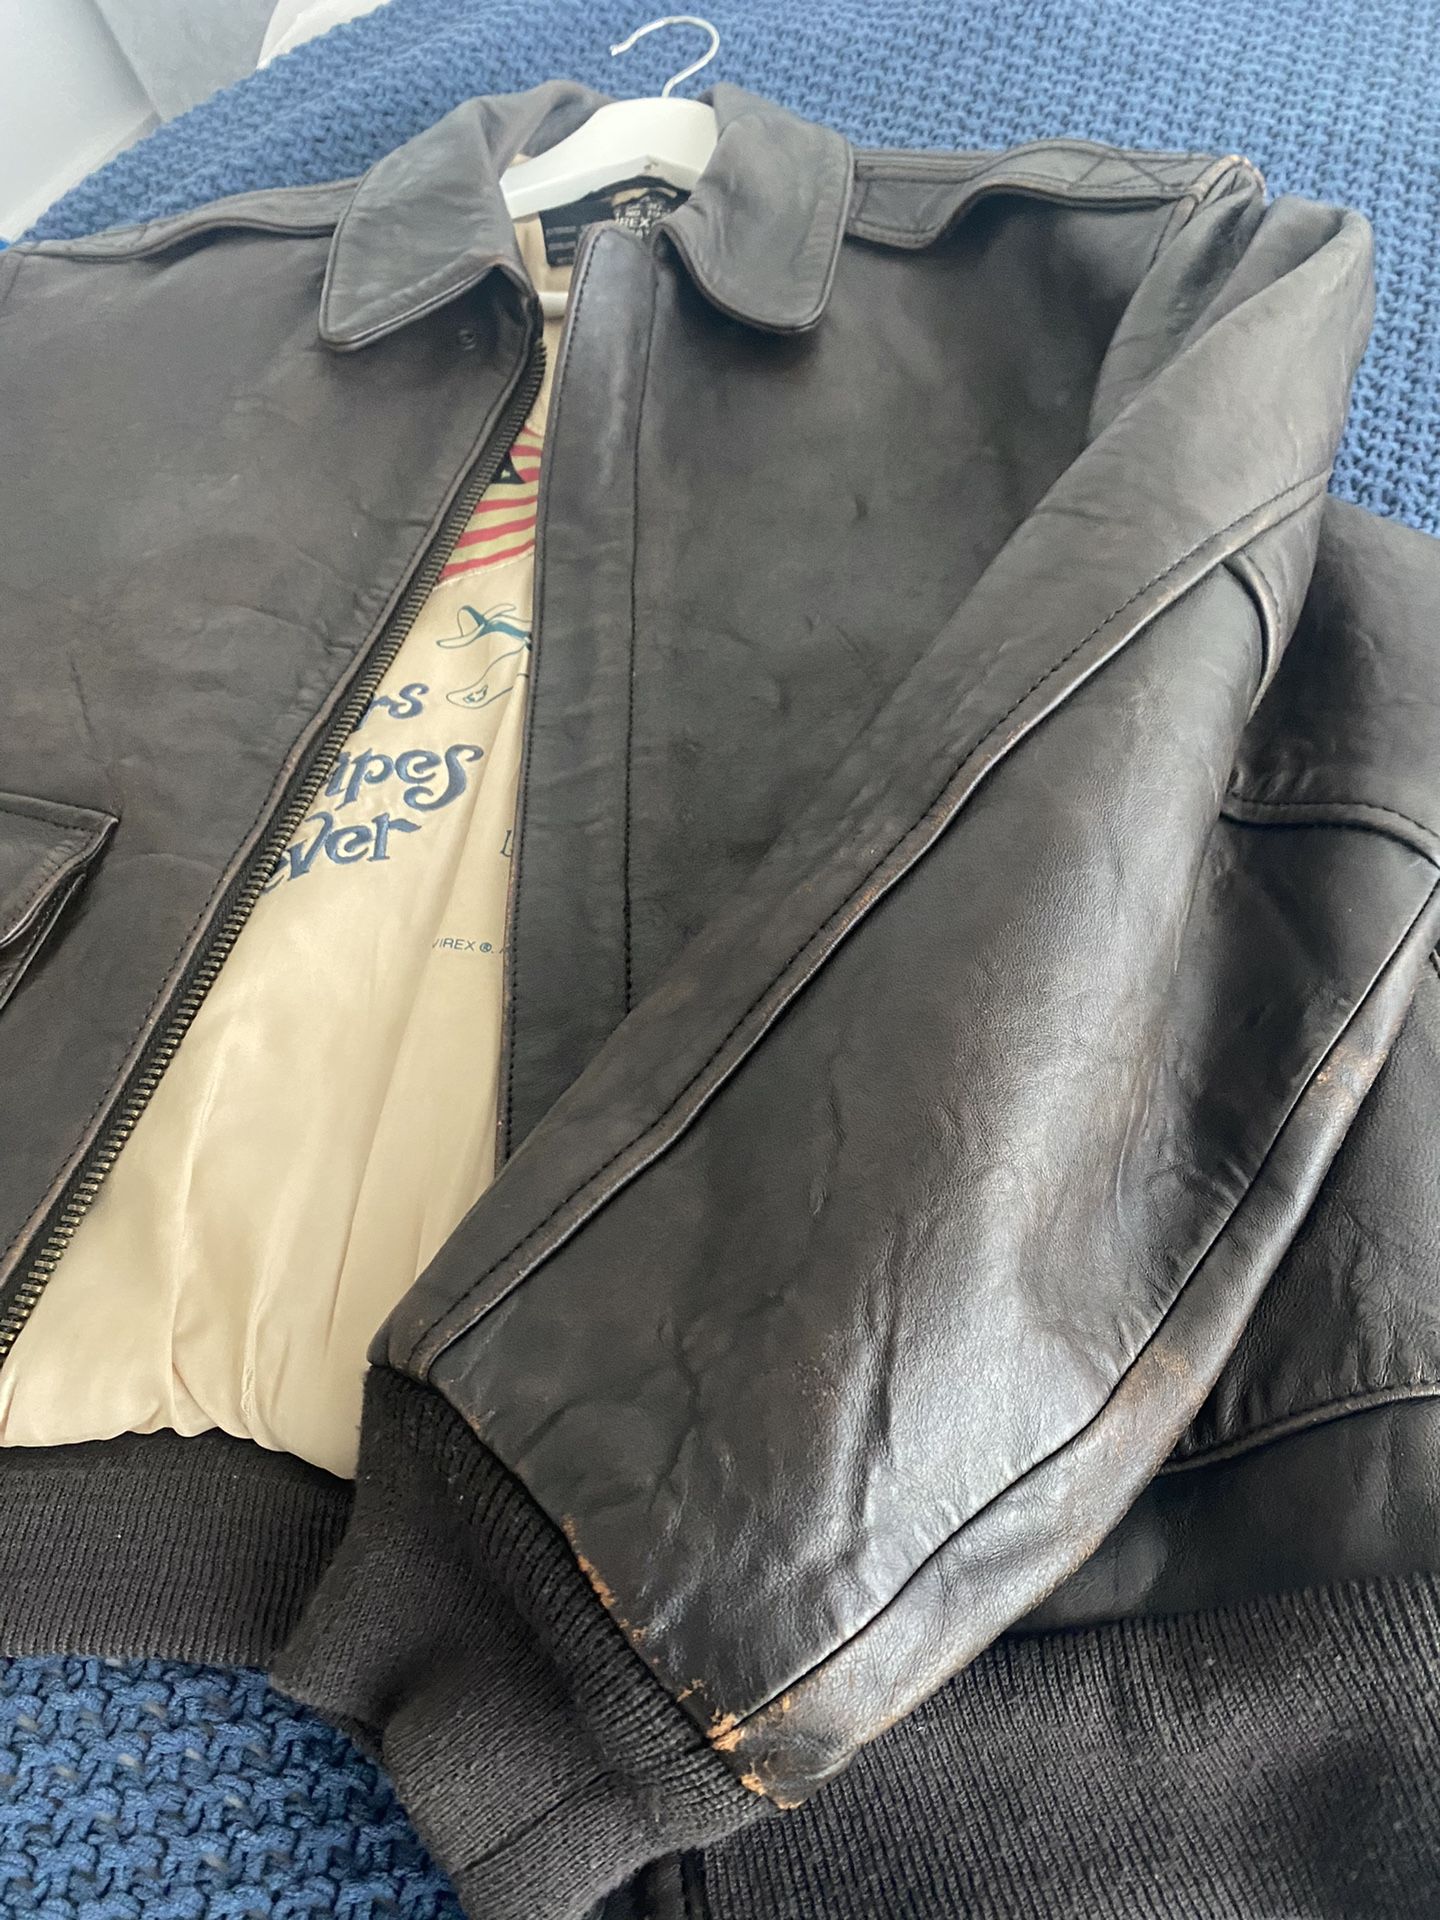 Leather Jacket $200